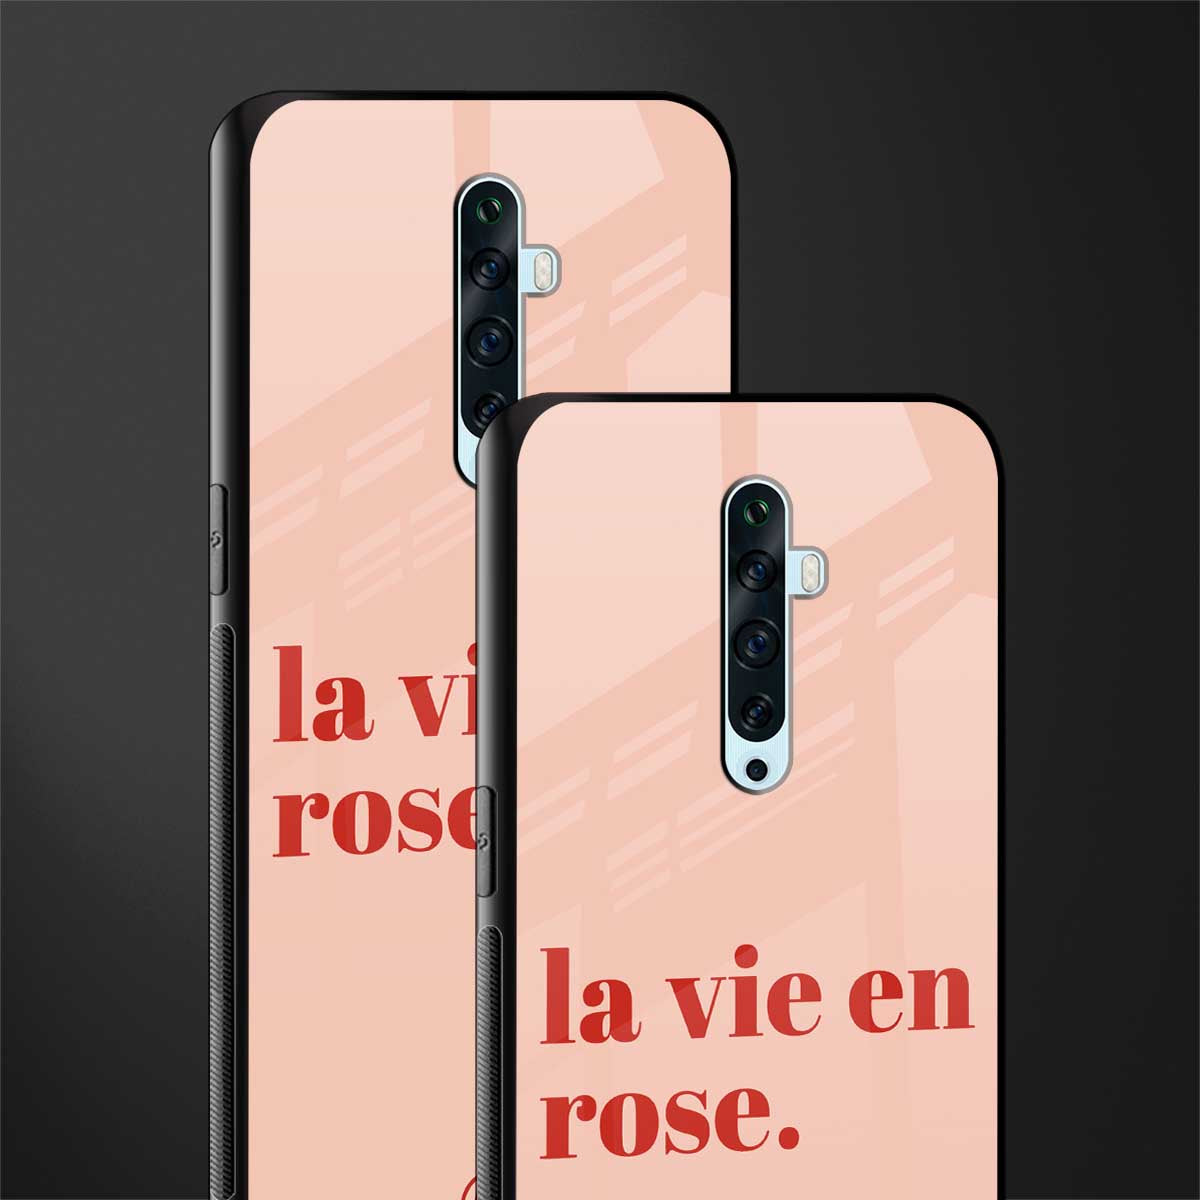 la vie en rose quote glass case for oppo reno 2f image-2